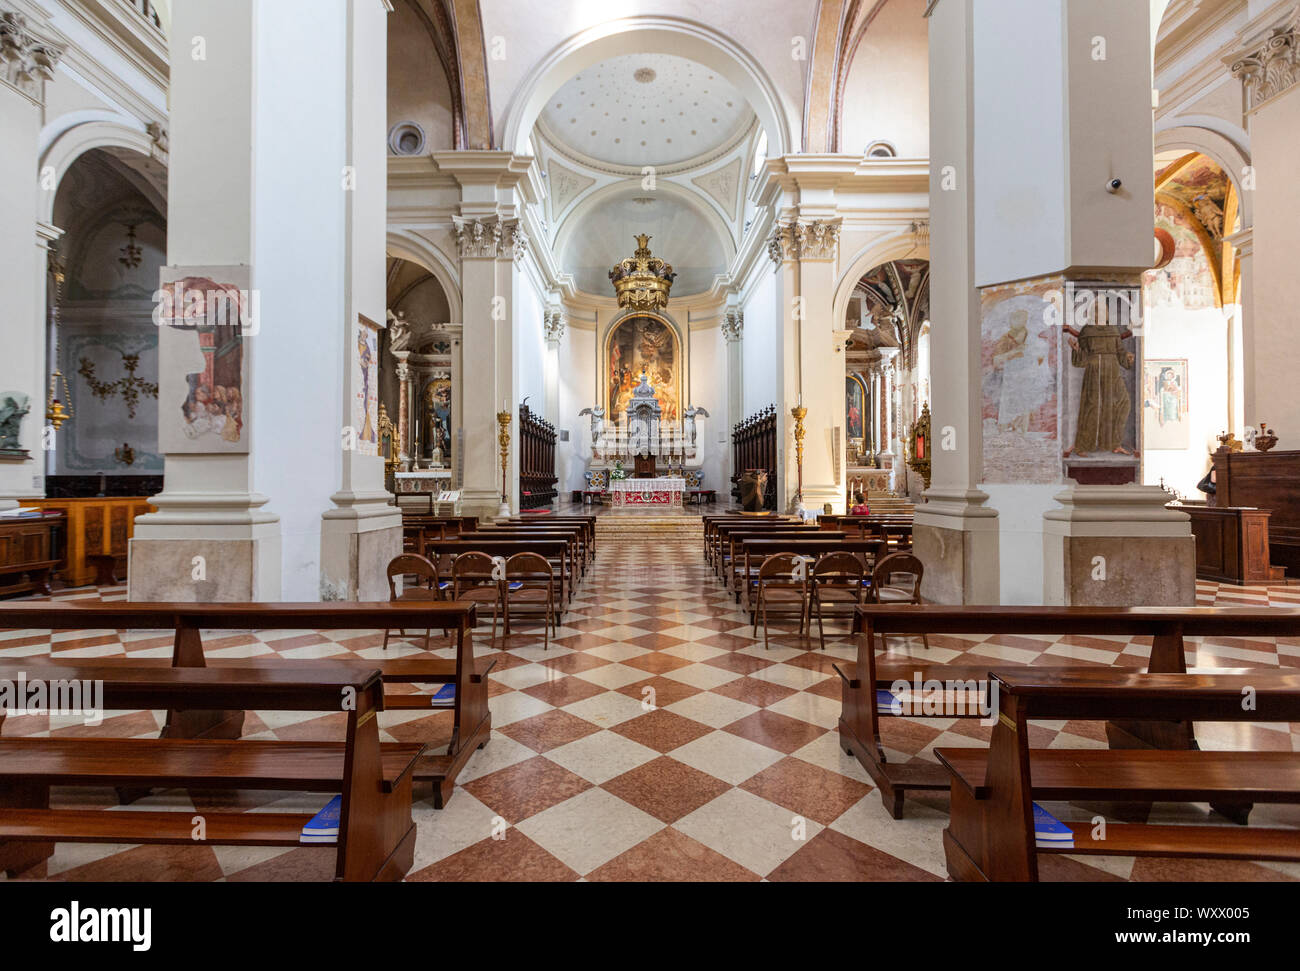 Luglio 21, 2019 - PORDENONE, Italia - la cattedrale medievale di San Marco, interno Foto Stock